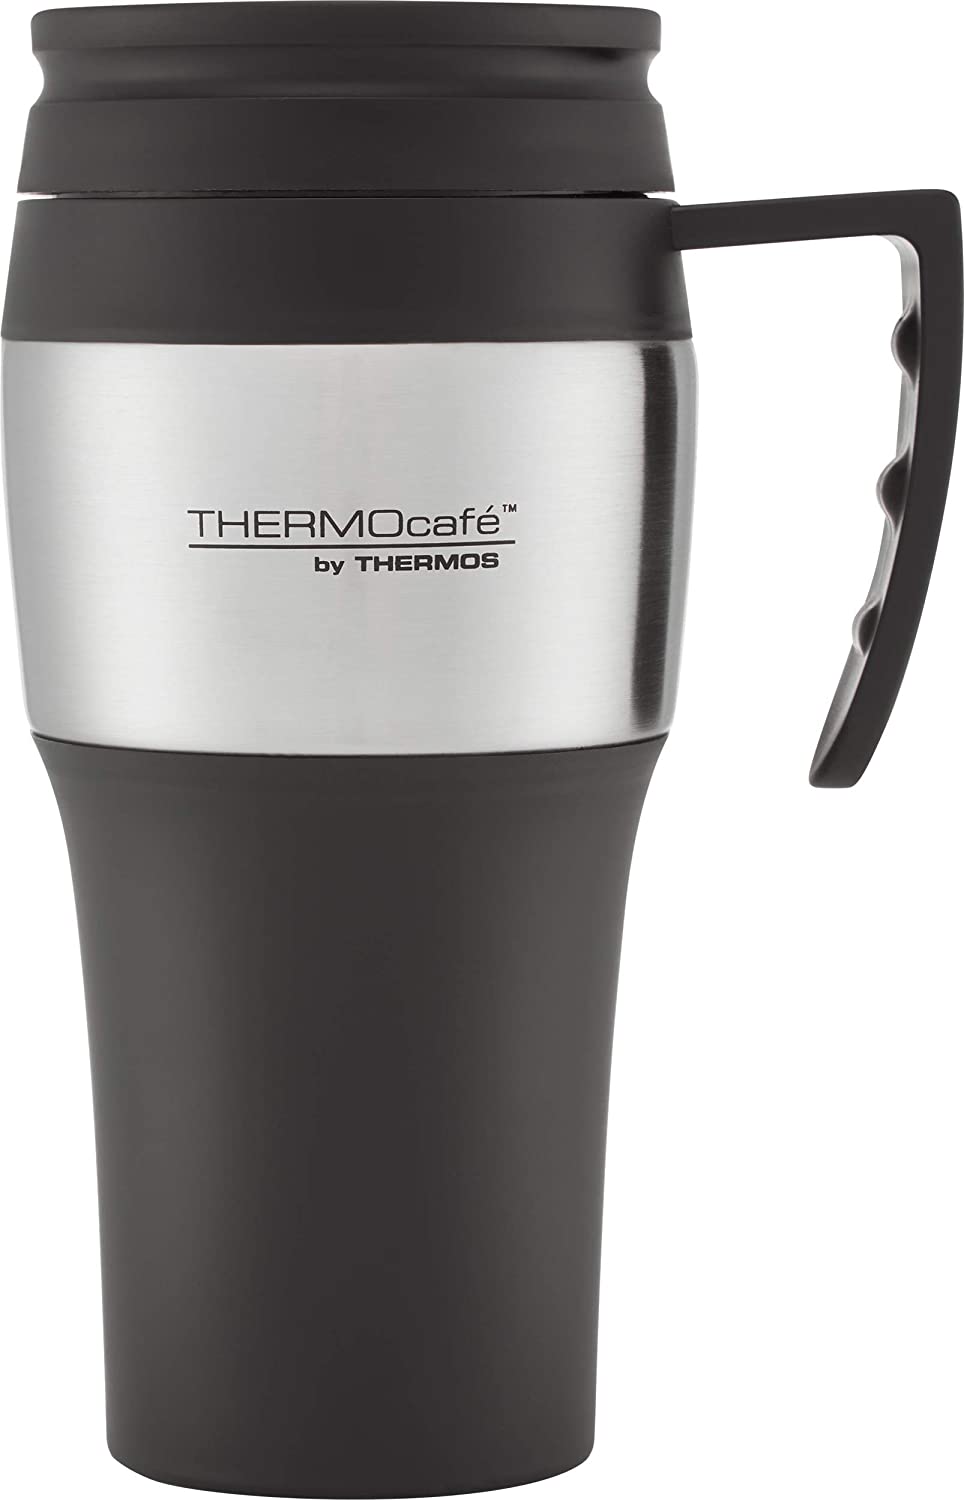 Thermos-ThermoCafé-2010-Travel-Mug-400-ml-Stainless-Steel